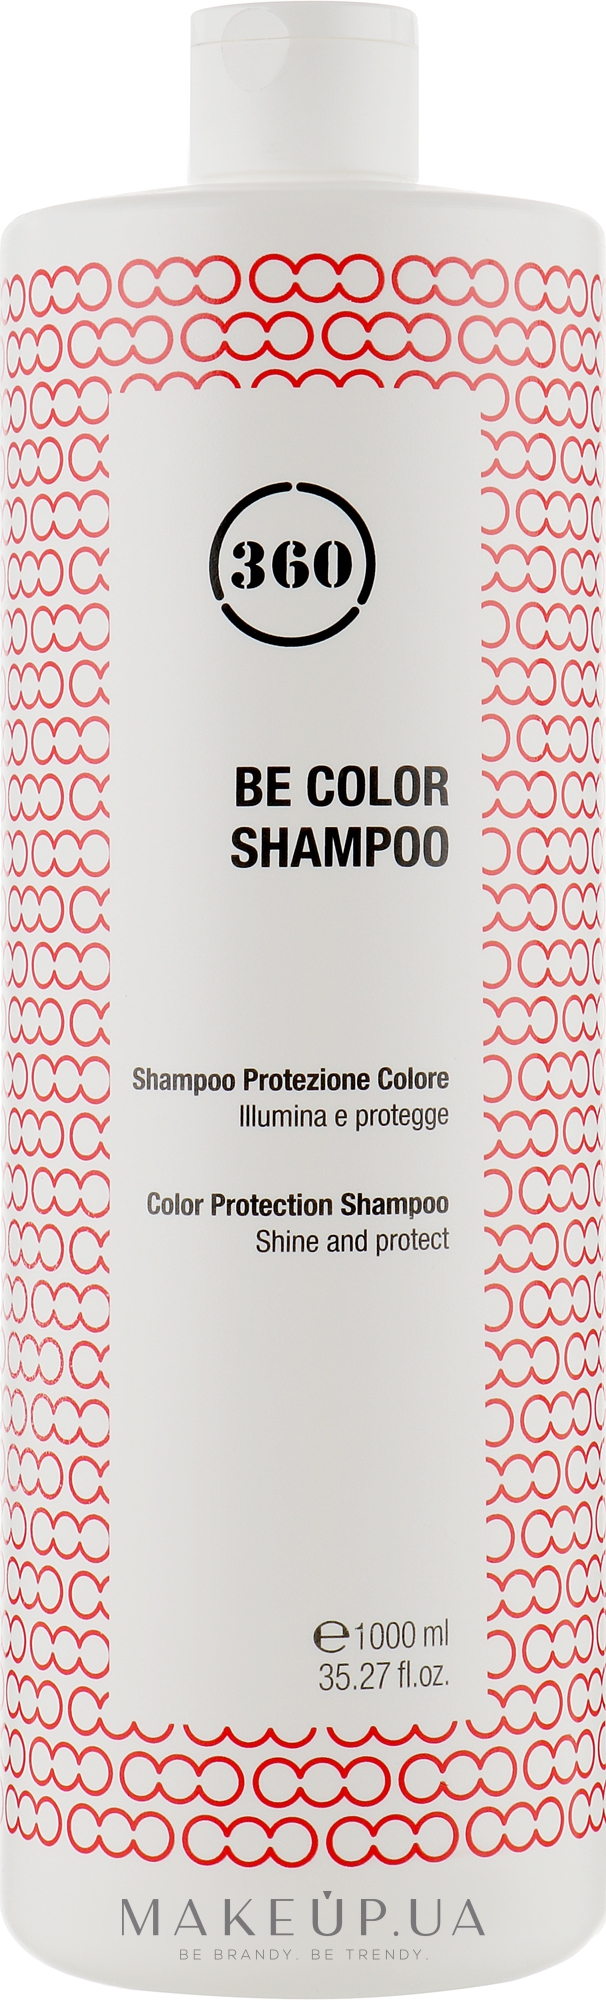 Шампунь для окрашенных волос с ежевичным уксусом - 360 Be Color Shampoo — фото 1000ml